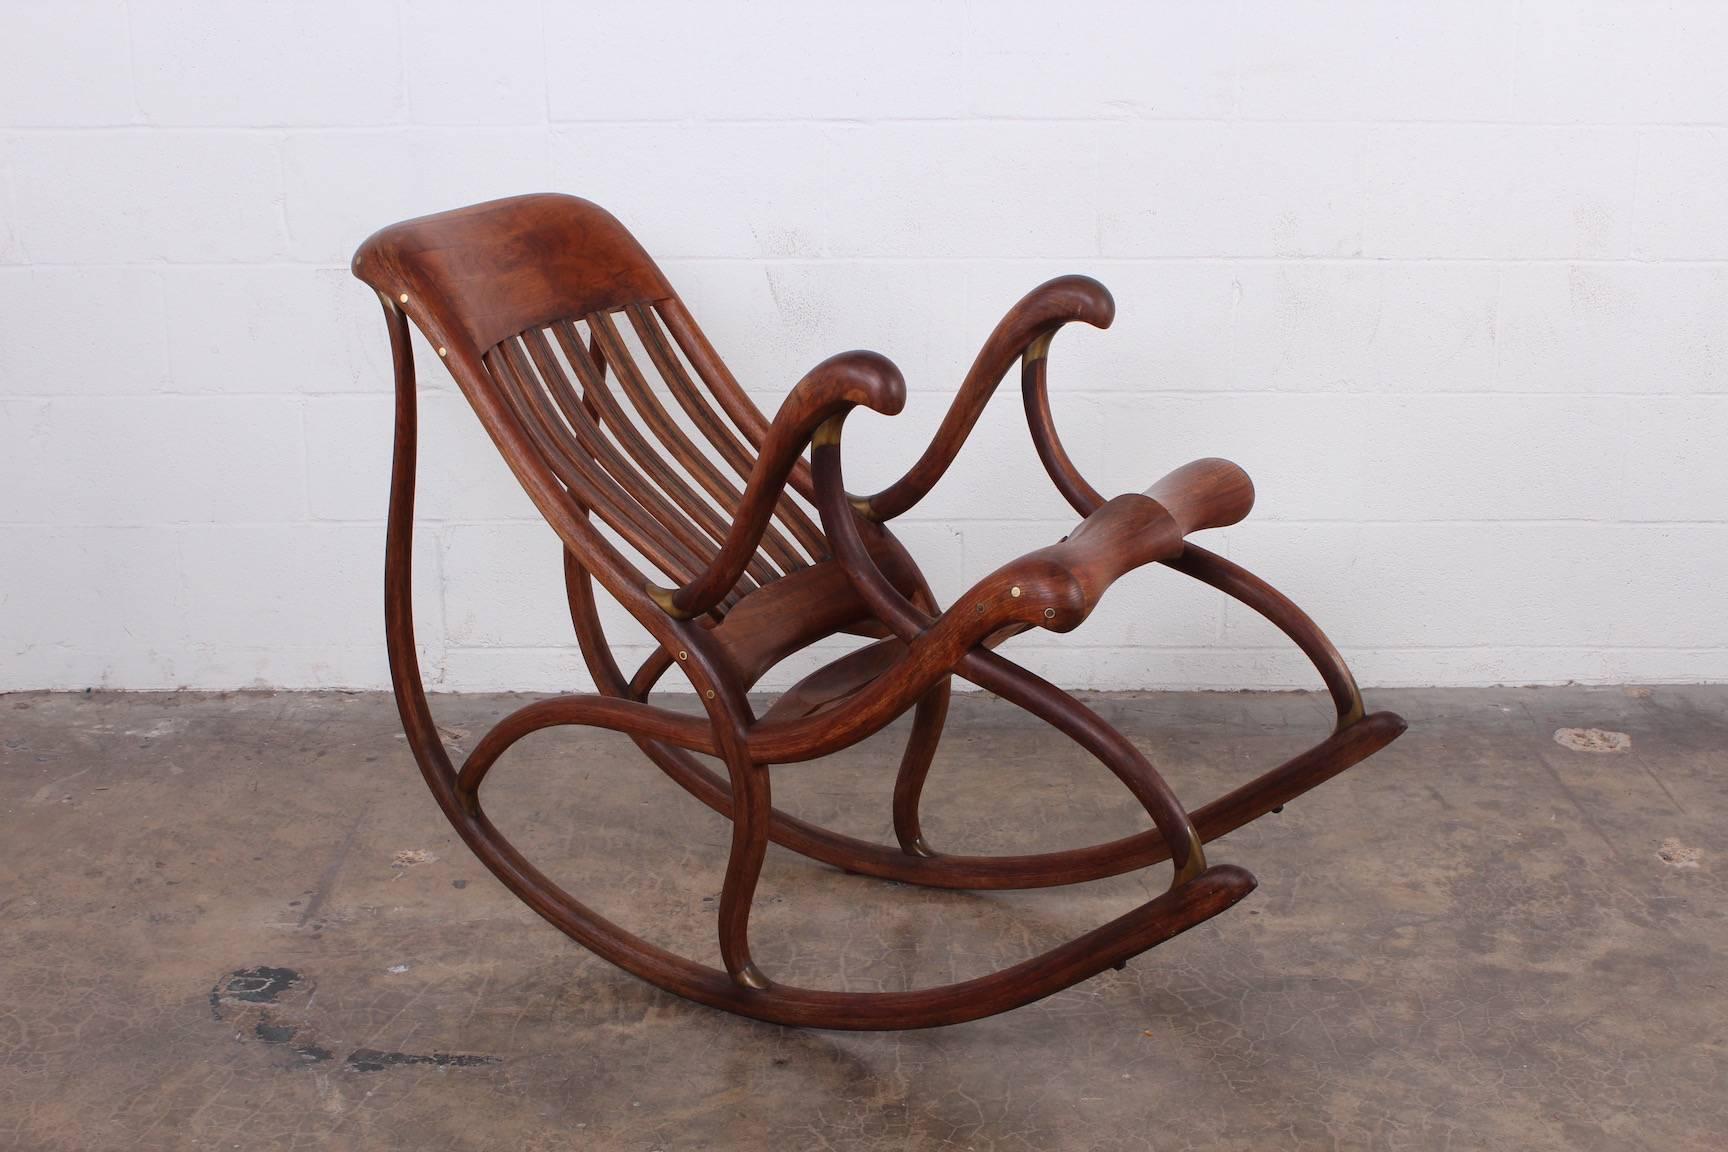 Chaise à bascule en noyer magnifiquement travaillée avec des détails en bronze. Fabriqué par David Crawford, 1988.